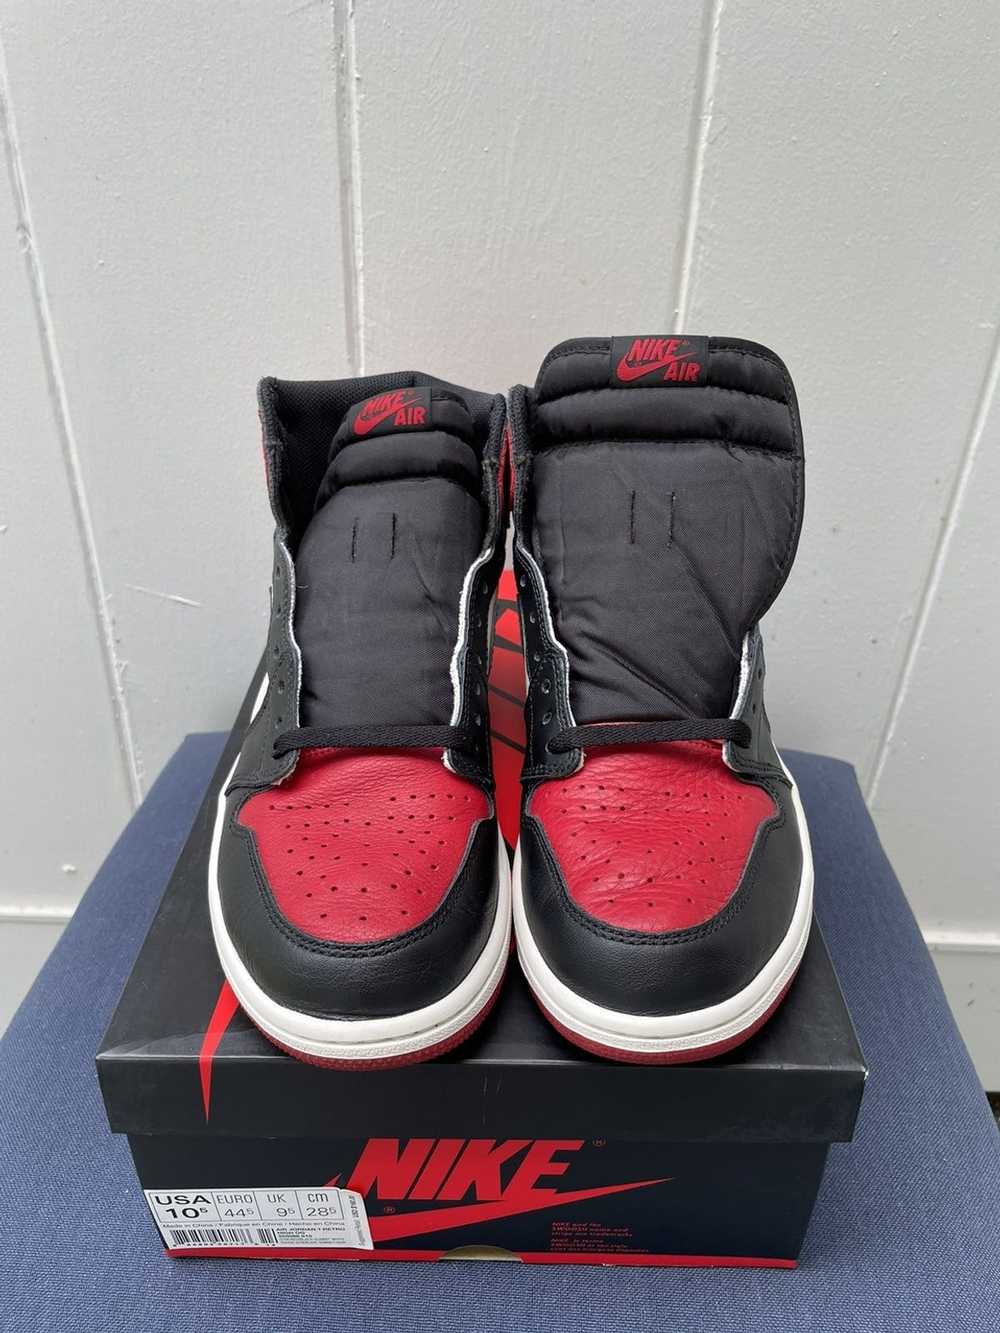 Jordan Brand × Nike Jordan 1 High Bred Toe 2018 - image 3